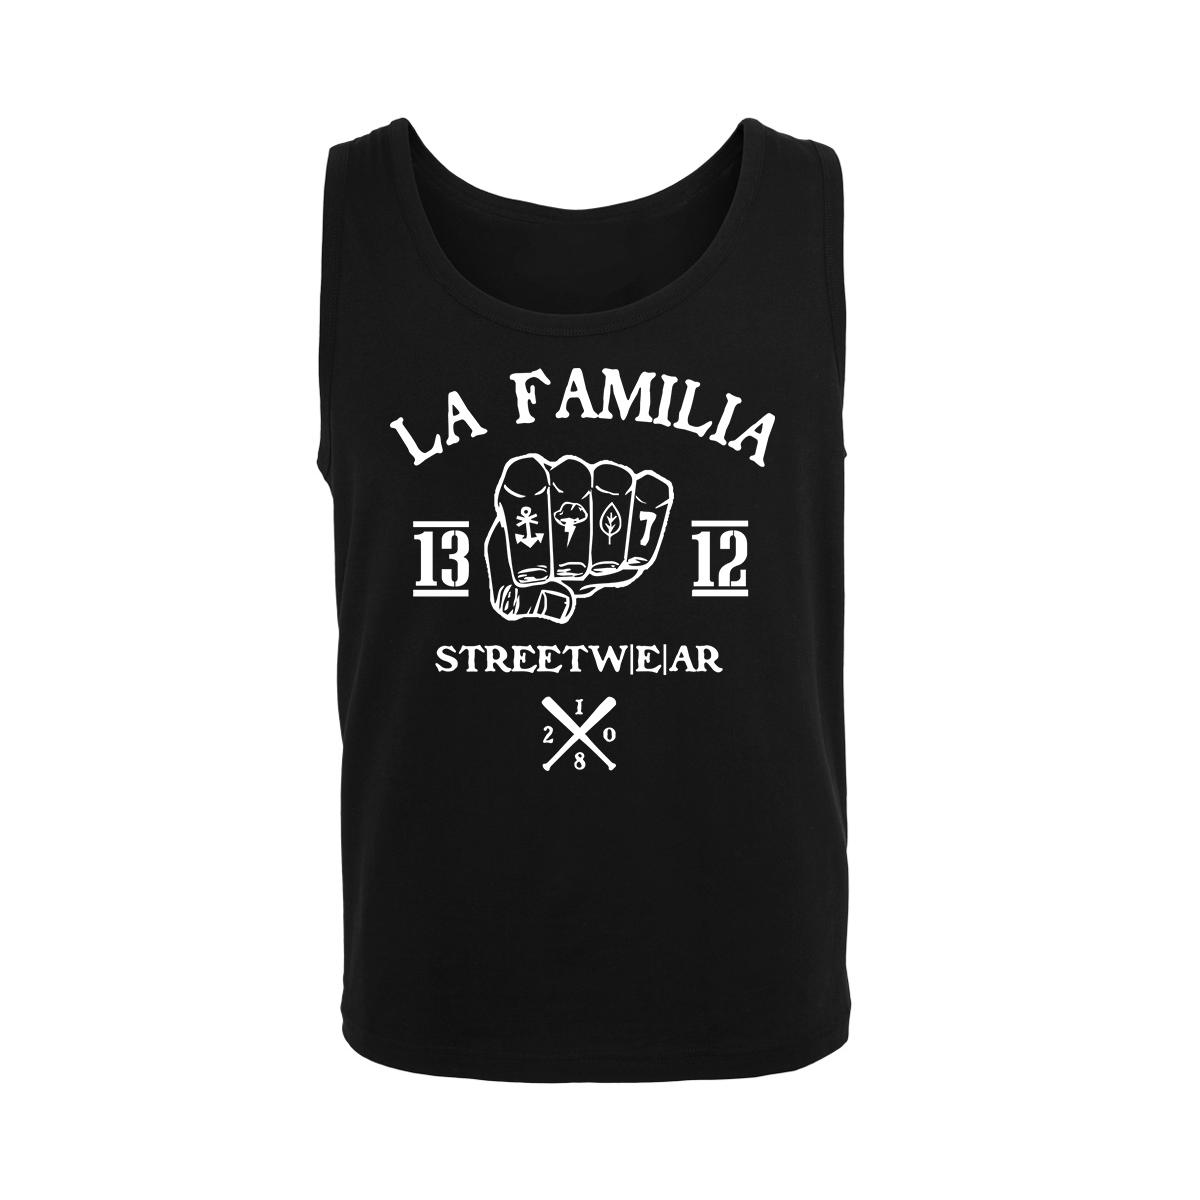 La Familia - 1312 Streetwear - Männer Muskelshirt - schwarz